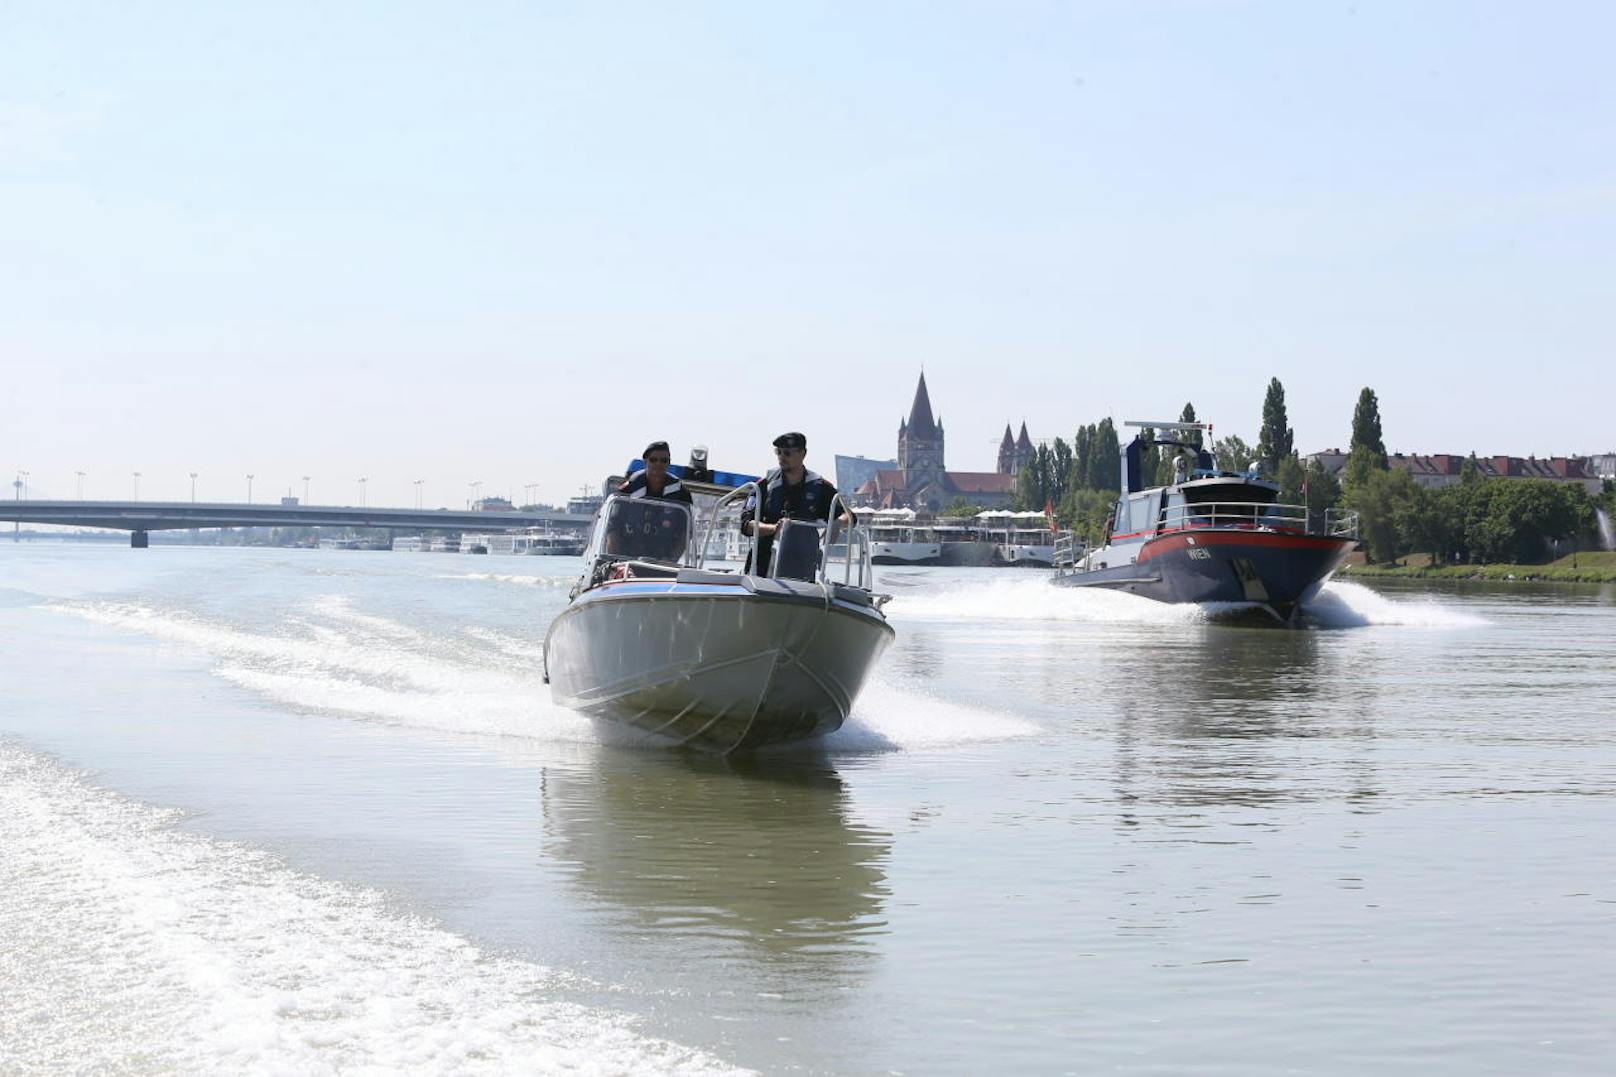 Beim Inselfest am Wochenende werden die 46 Beamten der Wiener Wasserpolizei wieder alle Hände voll zu tun haben. "Heute" schaute bei den "Seepferdchen" vorbei.